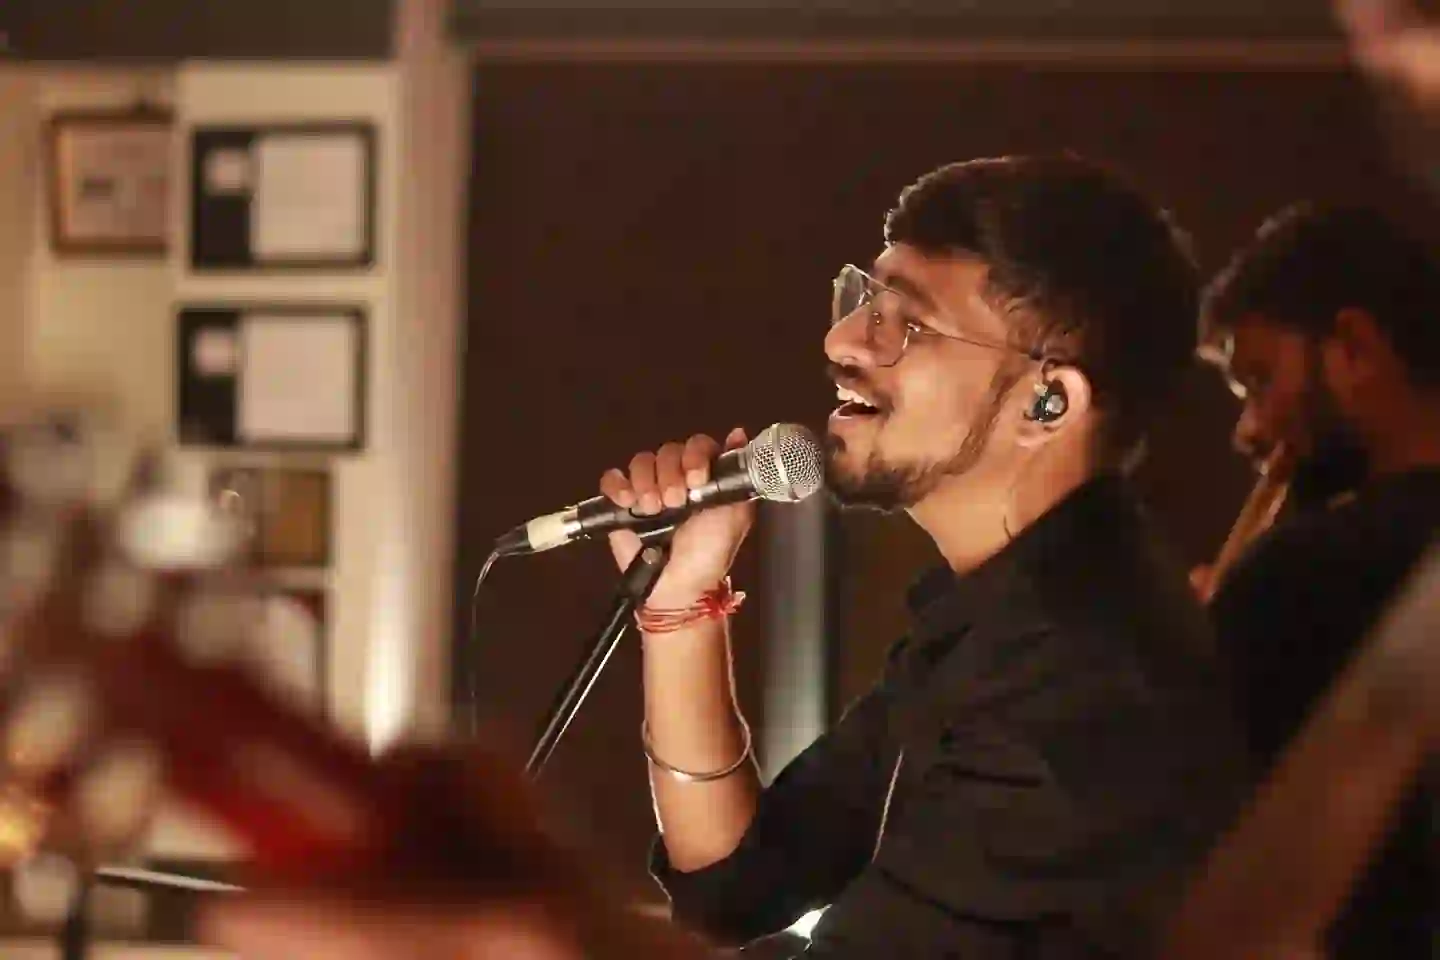 Rahul U Makes a Heartfelt Impact With New Single “Heartline”